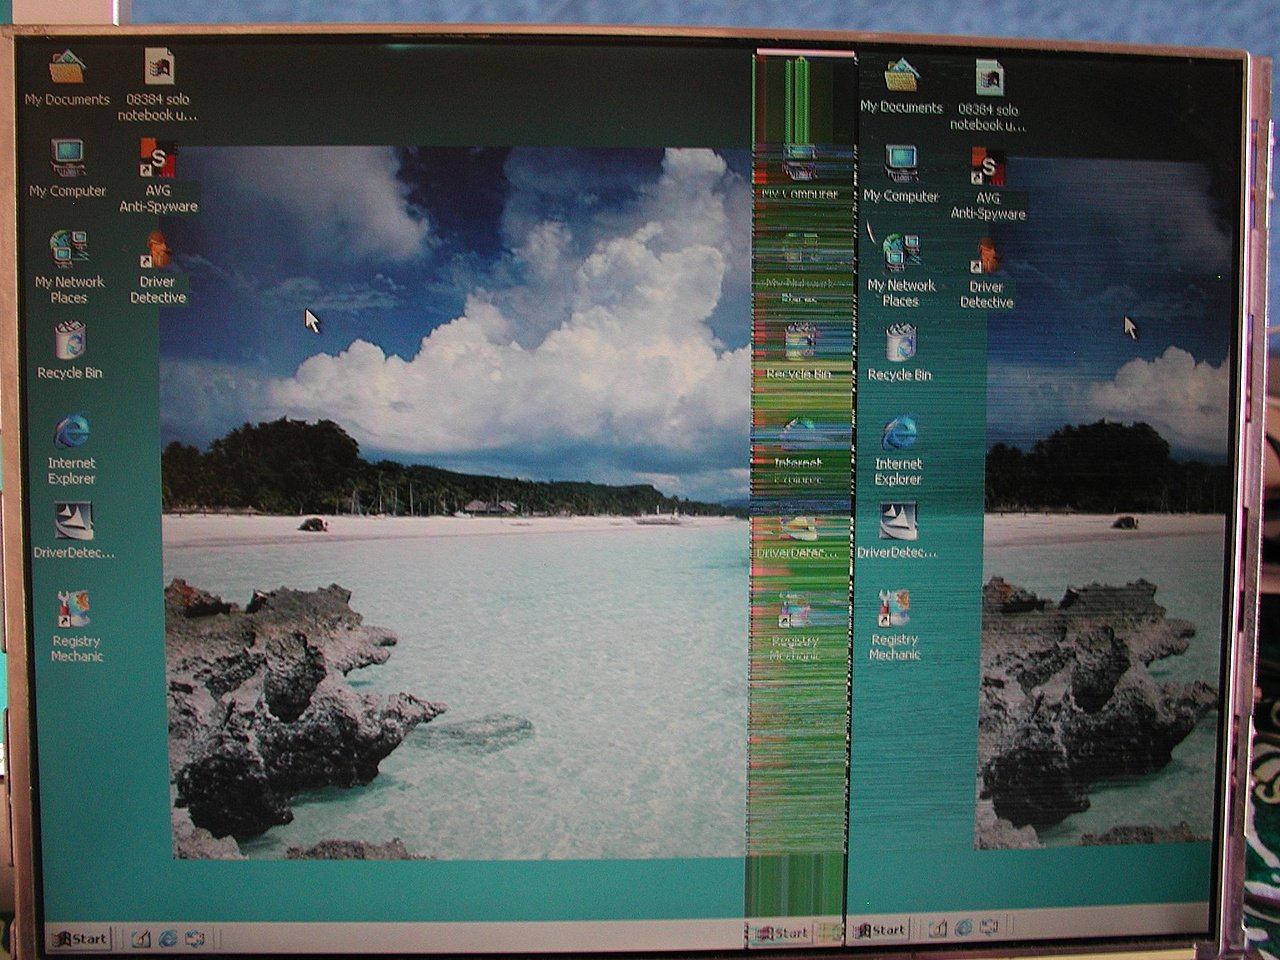 laptop_display.jpg 493.87 KB